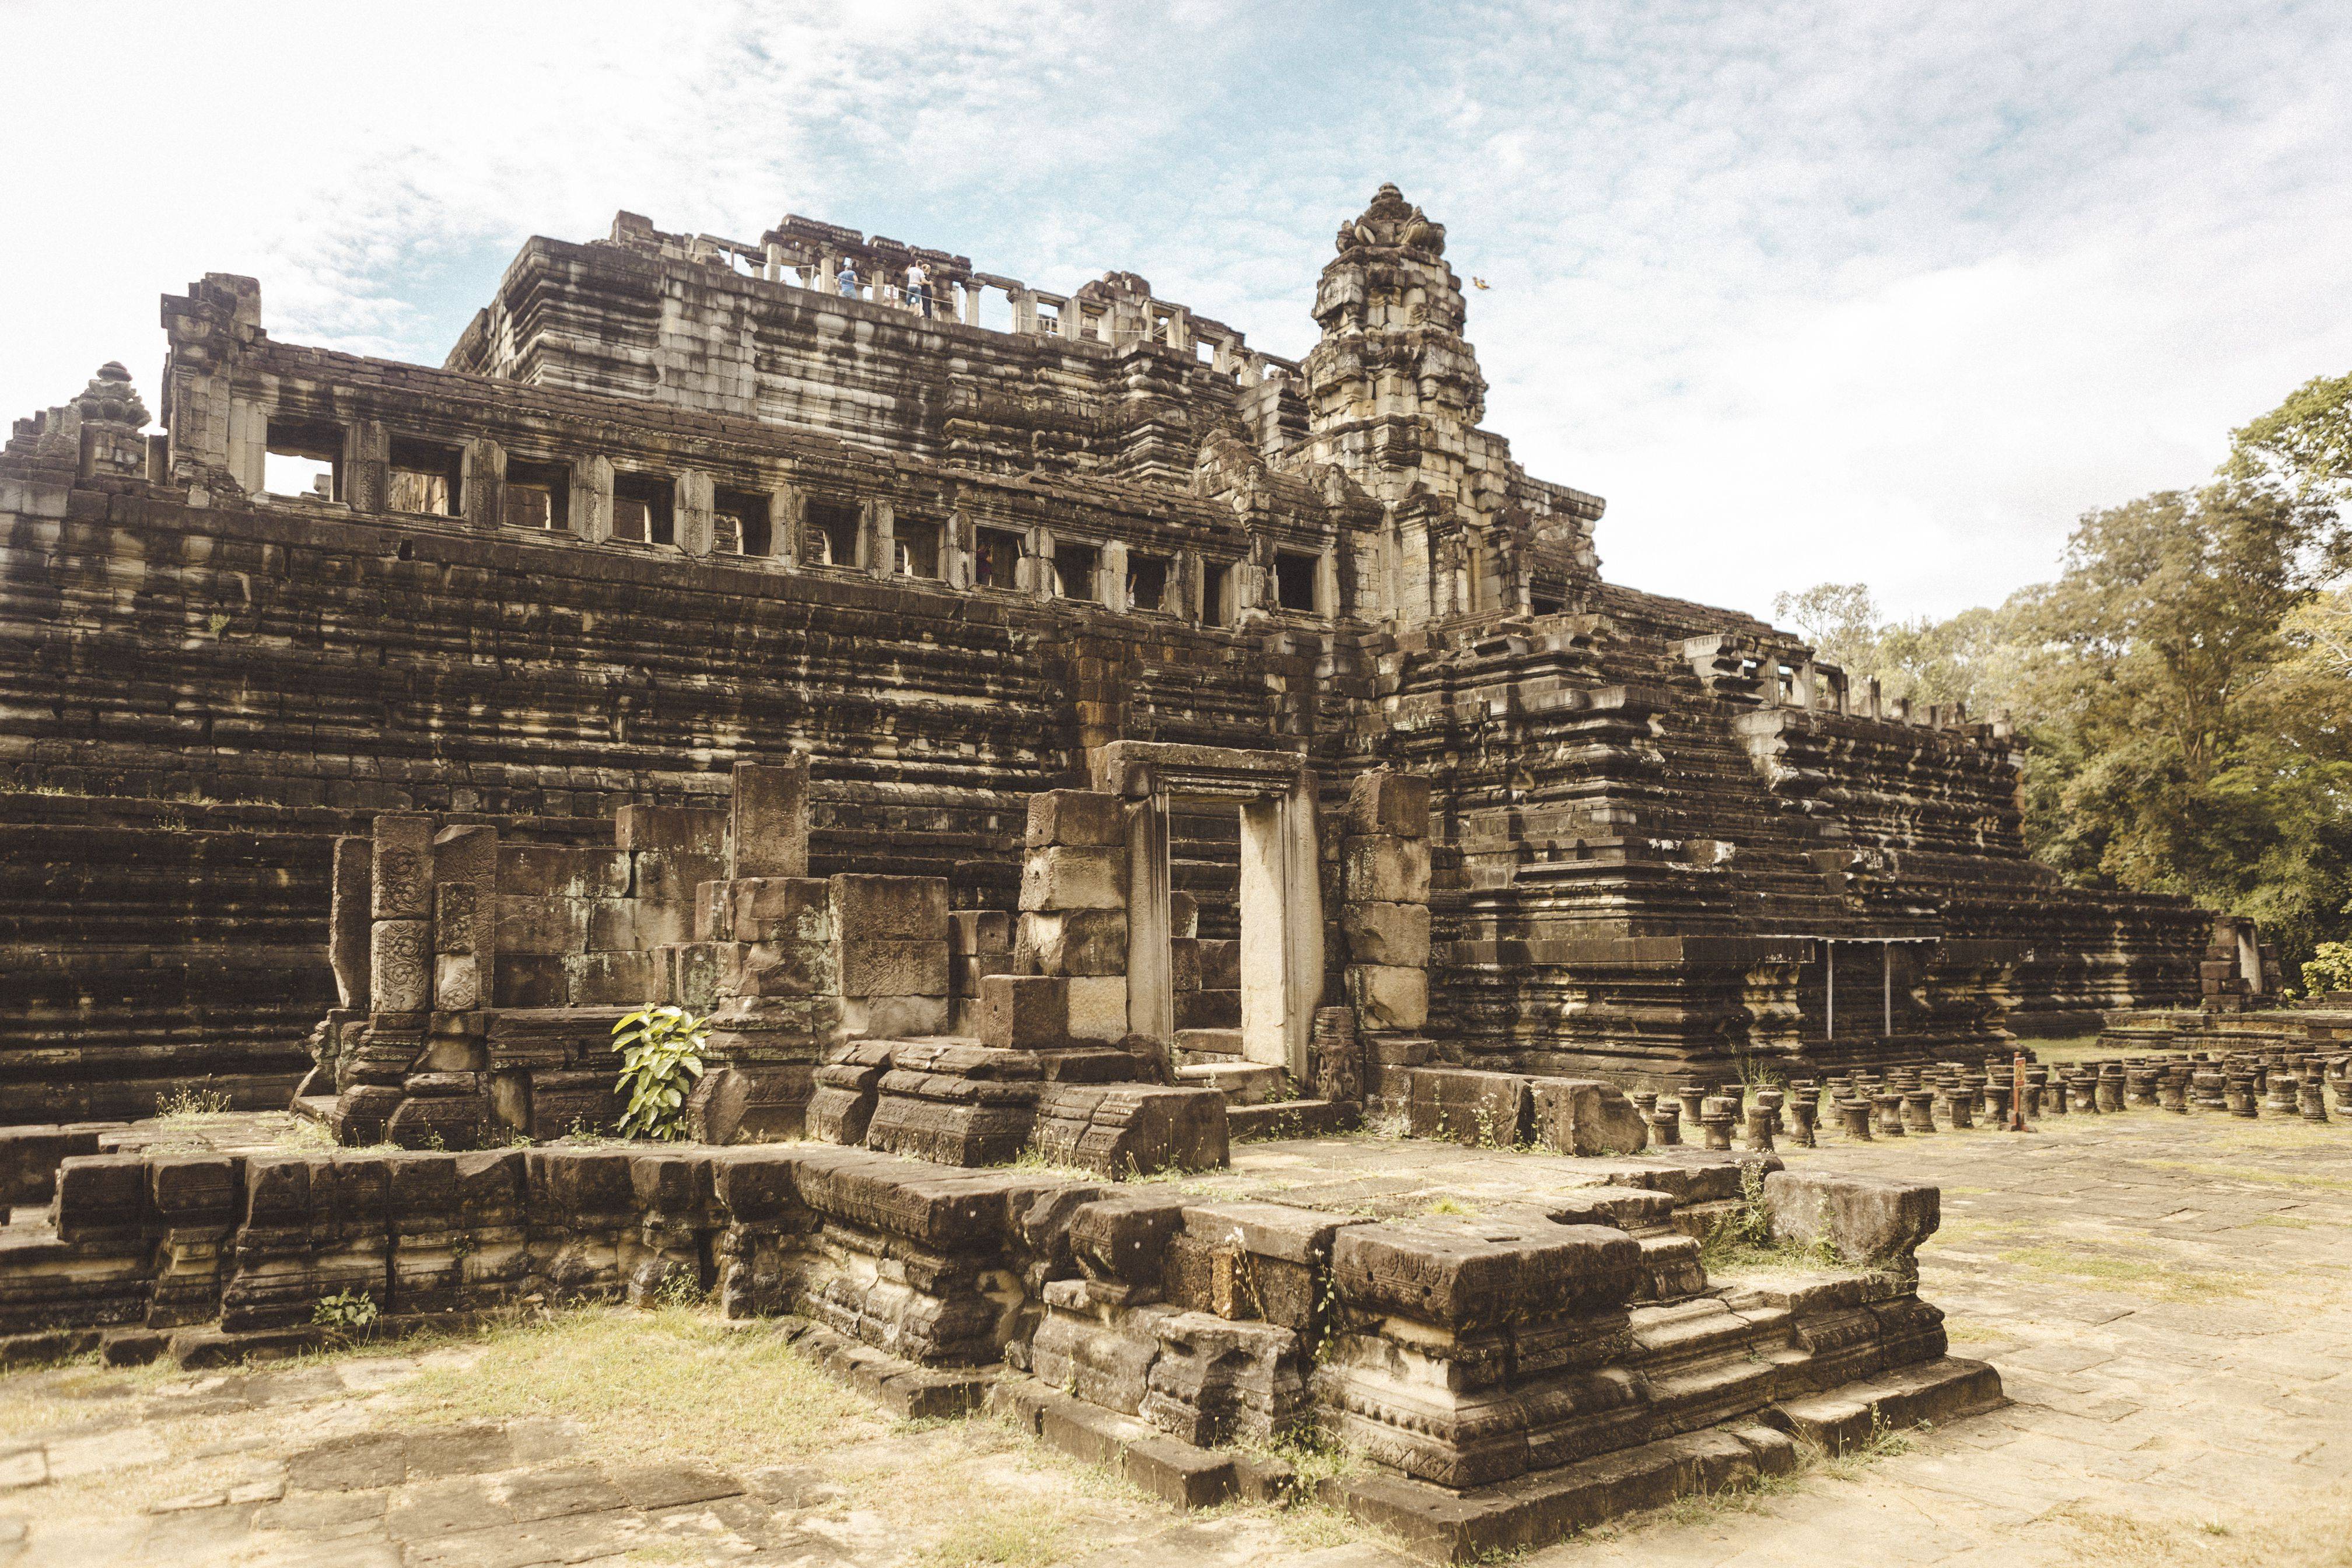 Храм ангкор-ват в камбодже - чудеса света